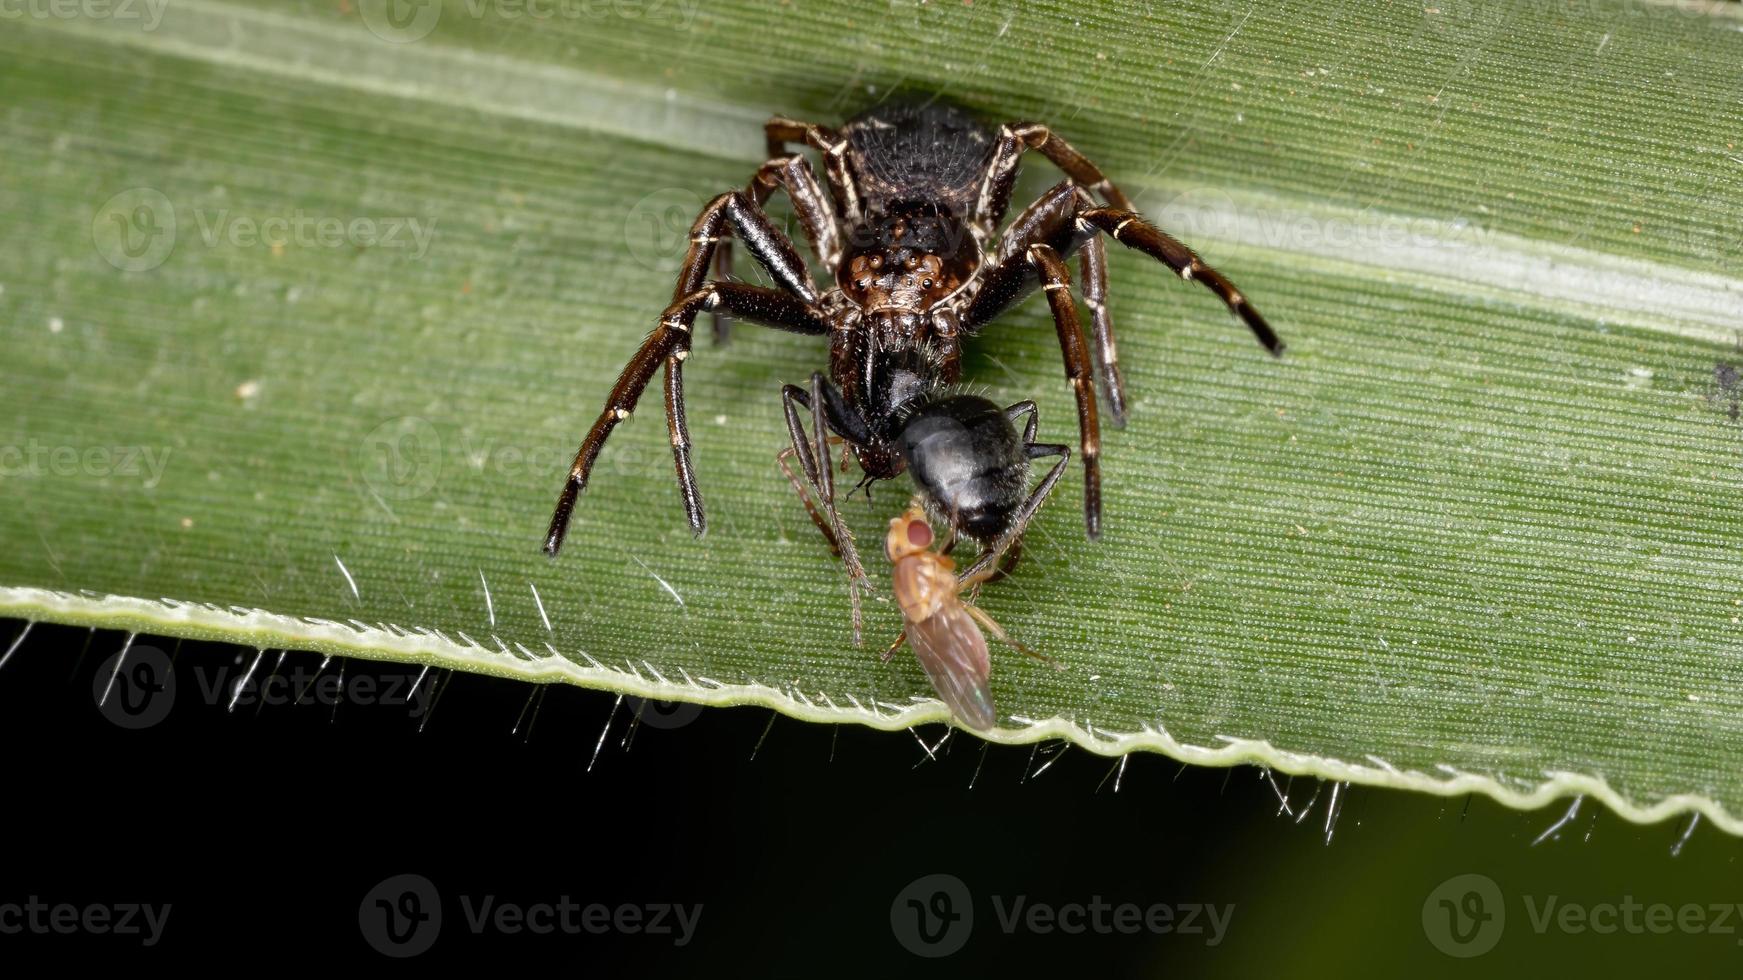 Krabbenspinne jagt eine Ameise foto